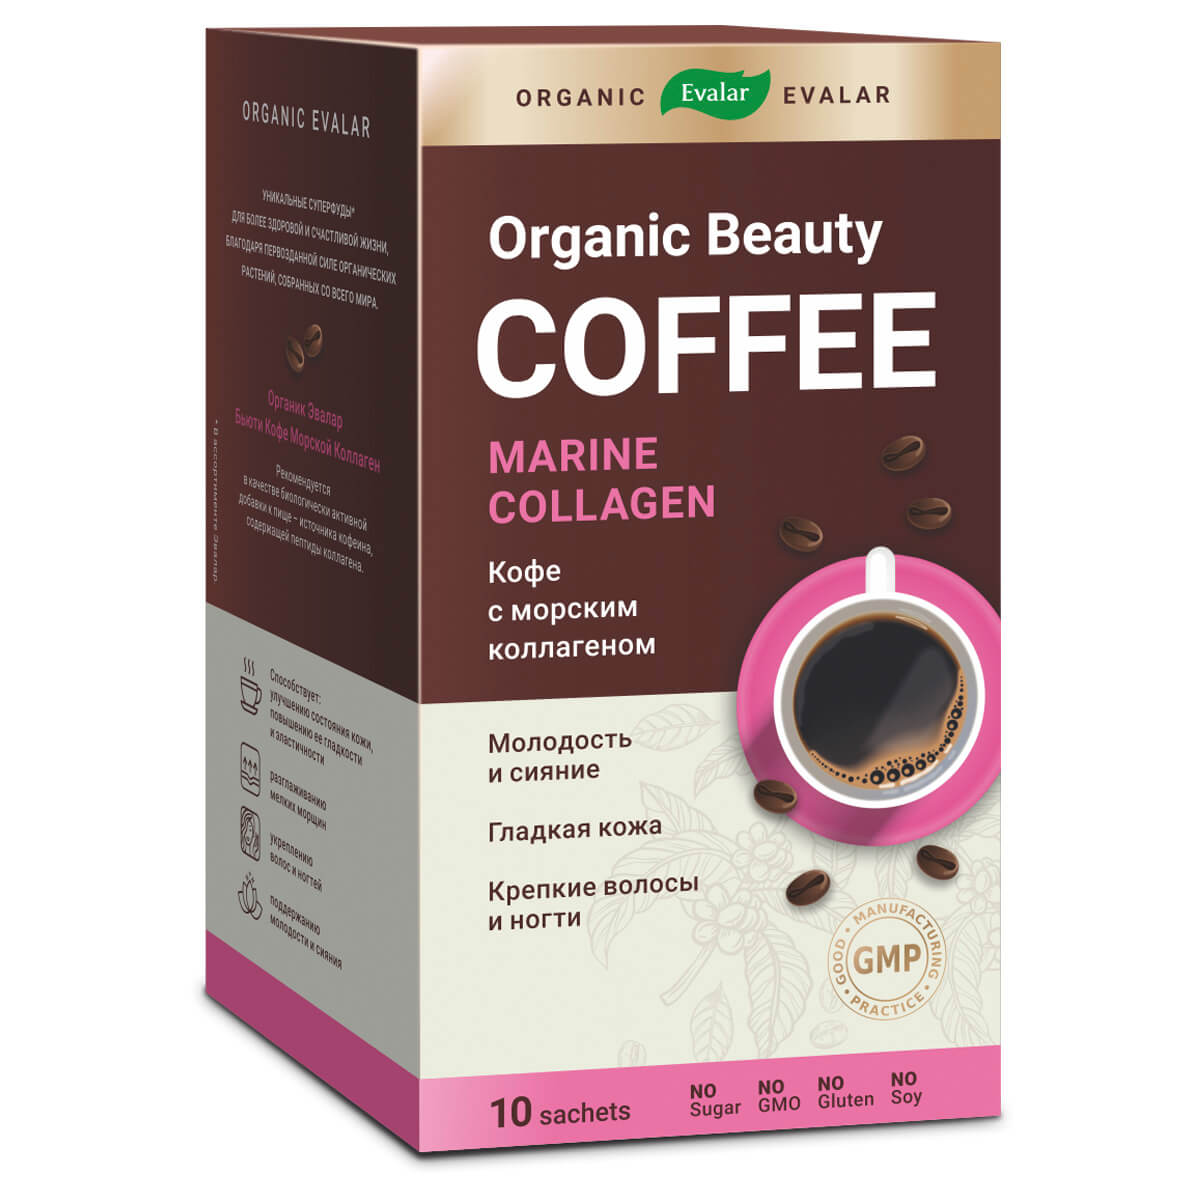 Купить Кофе с коллагеном для красоты и молодости Organic Evalar beauty, 5000 мг, 10 саше-пакетов, Organic Evalar, Пищевая добавка Эвалар 5000 мг кофе с коллагеном для красоты и молодости саше-пакеты 10 шт